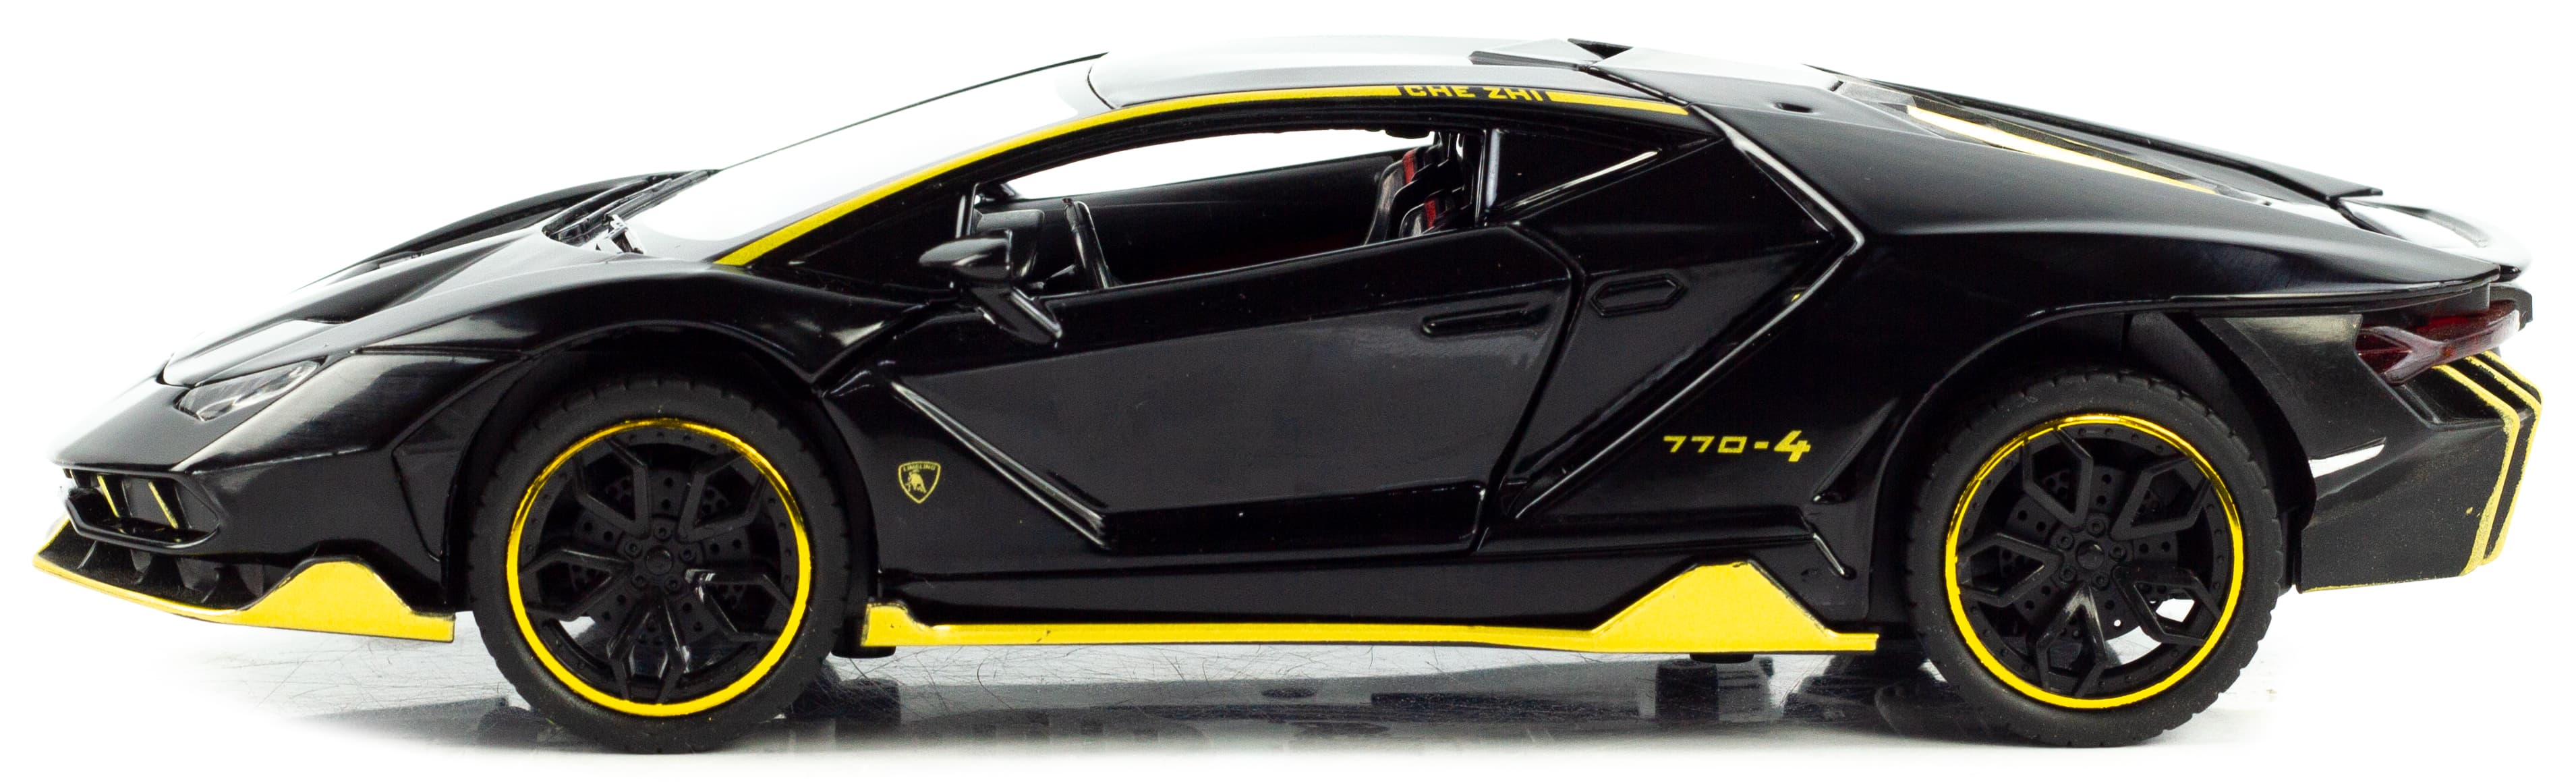 Металлическая машинка Che Zhi 1:24 «Lamborghini Centenario LP770-4» CZ25A, 21 см. инерционная, свет, звук / Микс